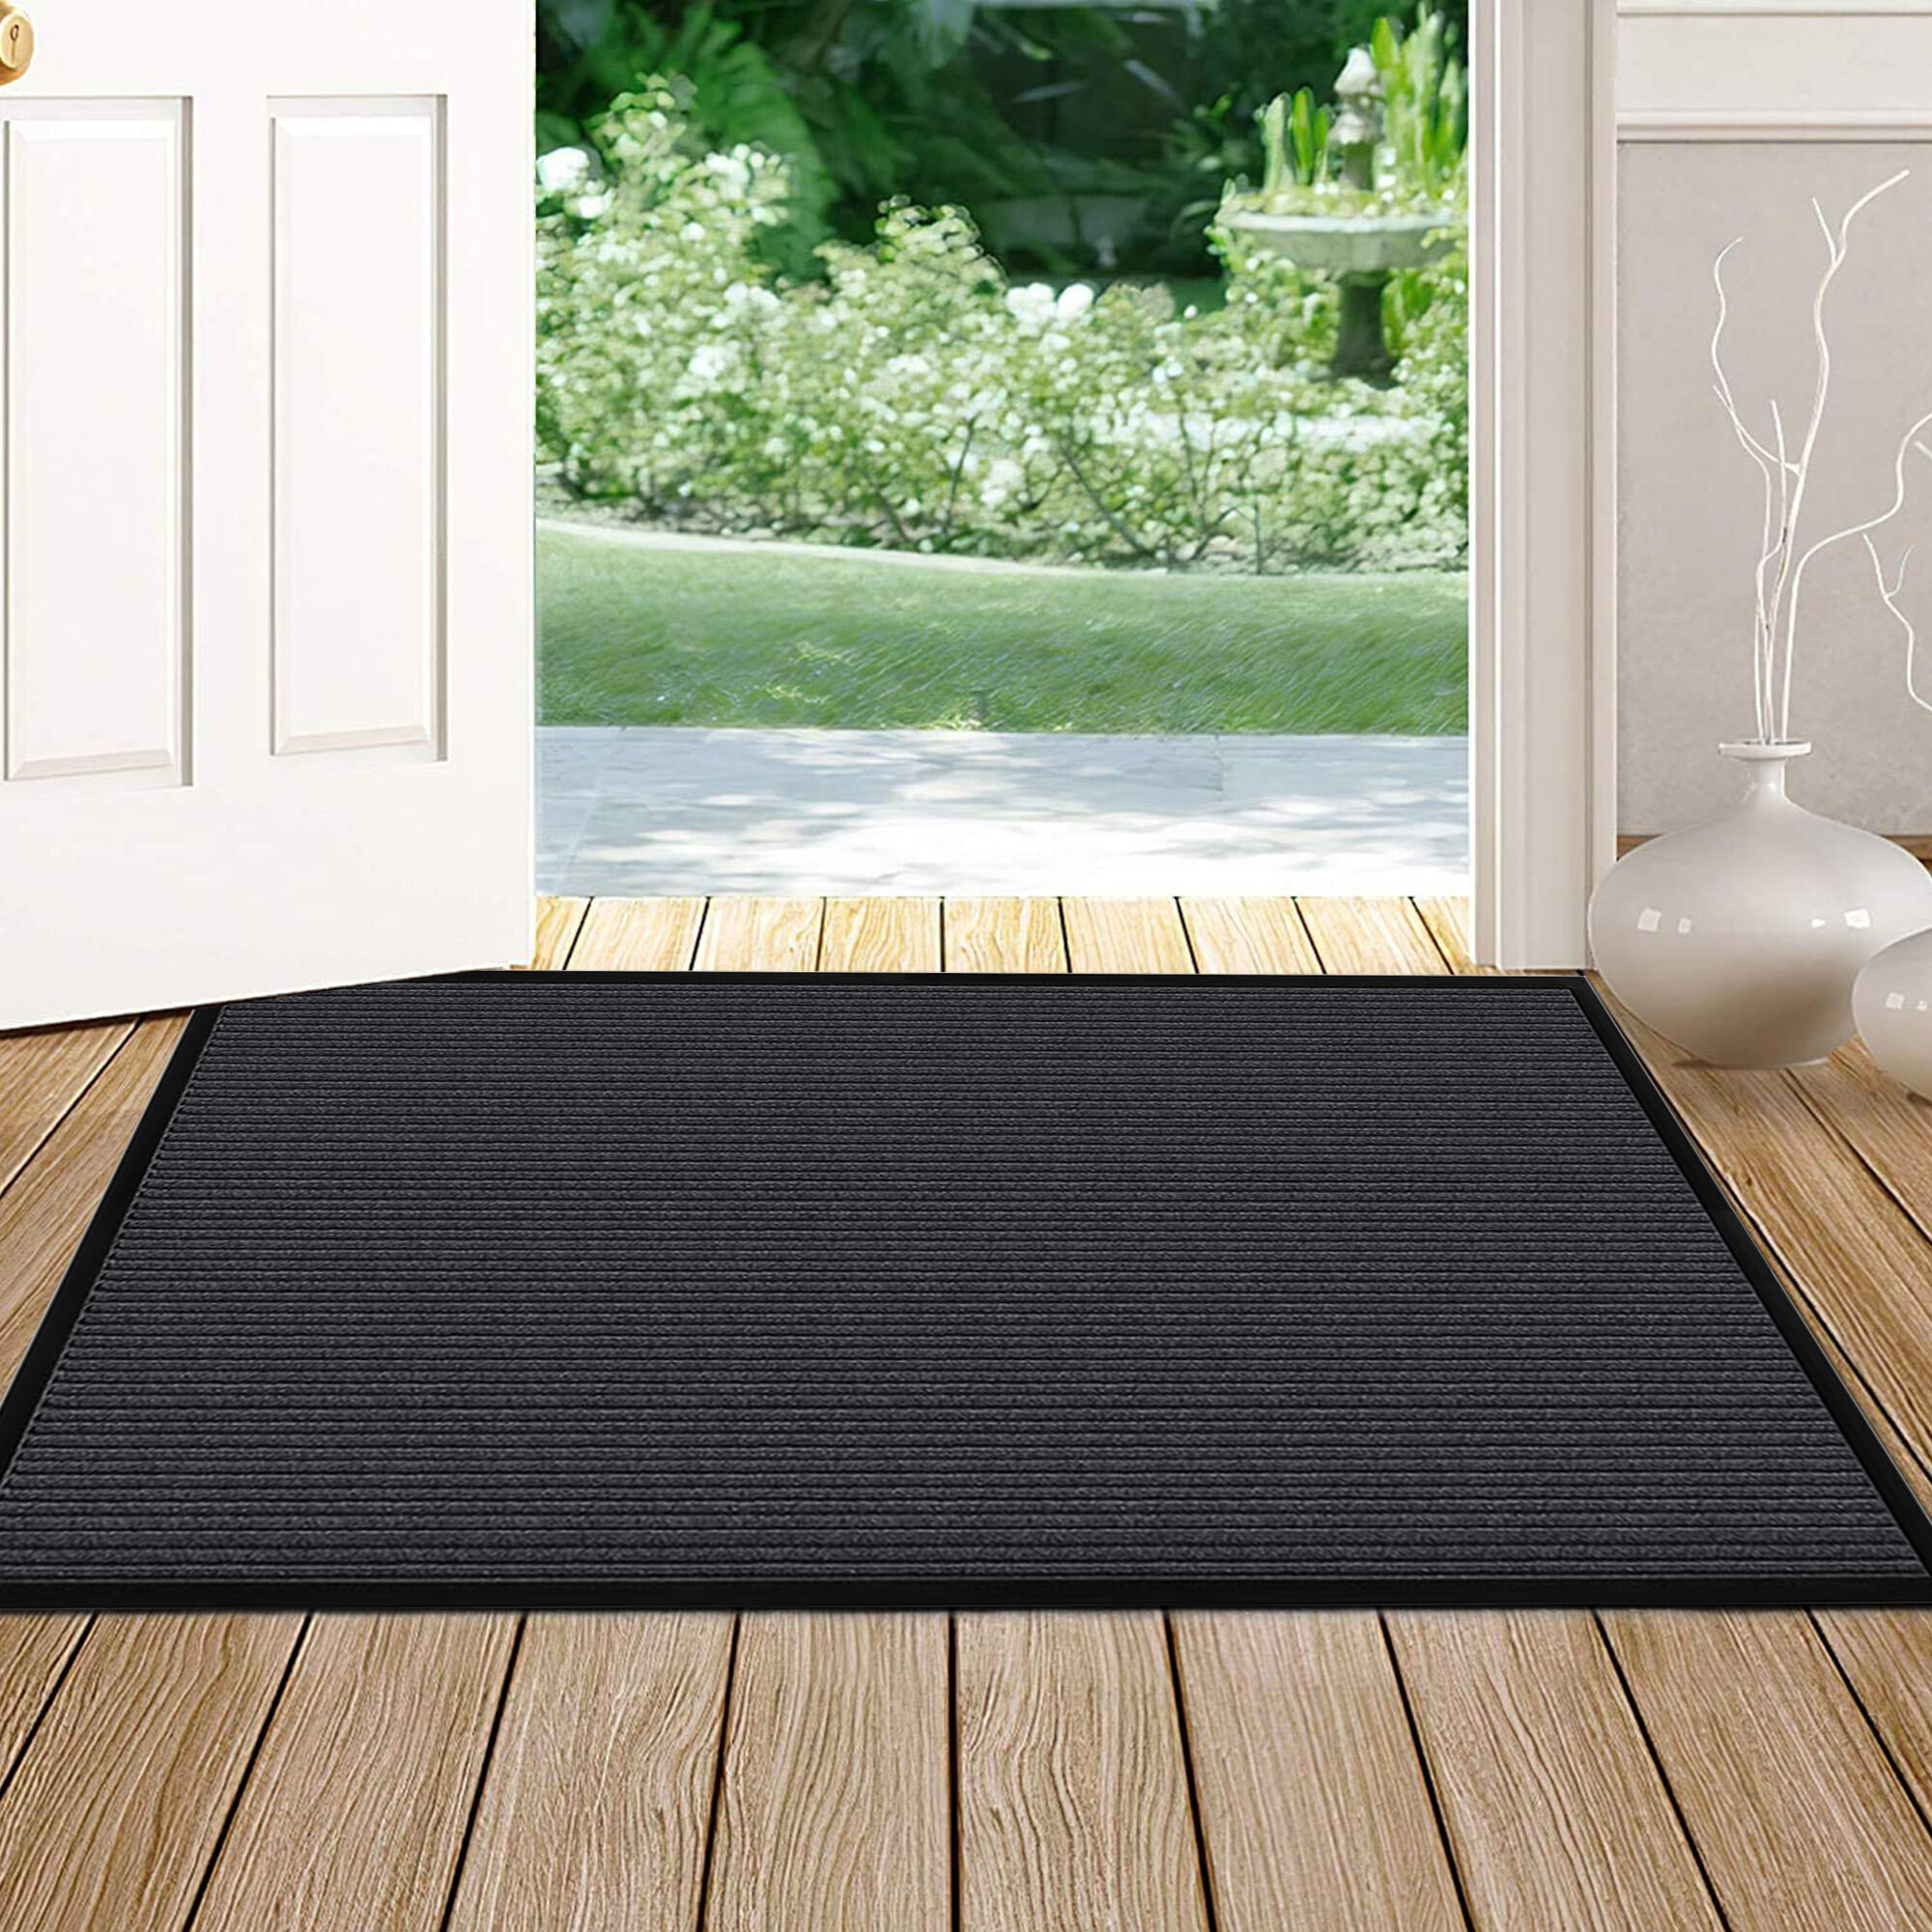 Durable Polyester and Rubber Door Mat Heavy Duty Doormat Indoor & Outdoor Rug 